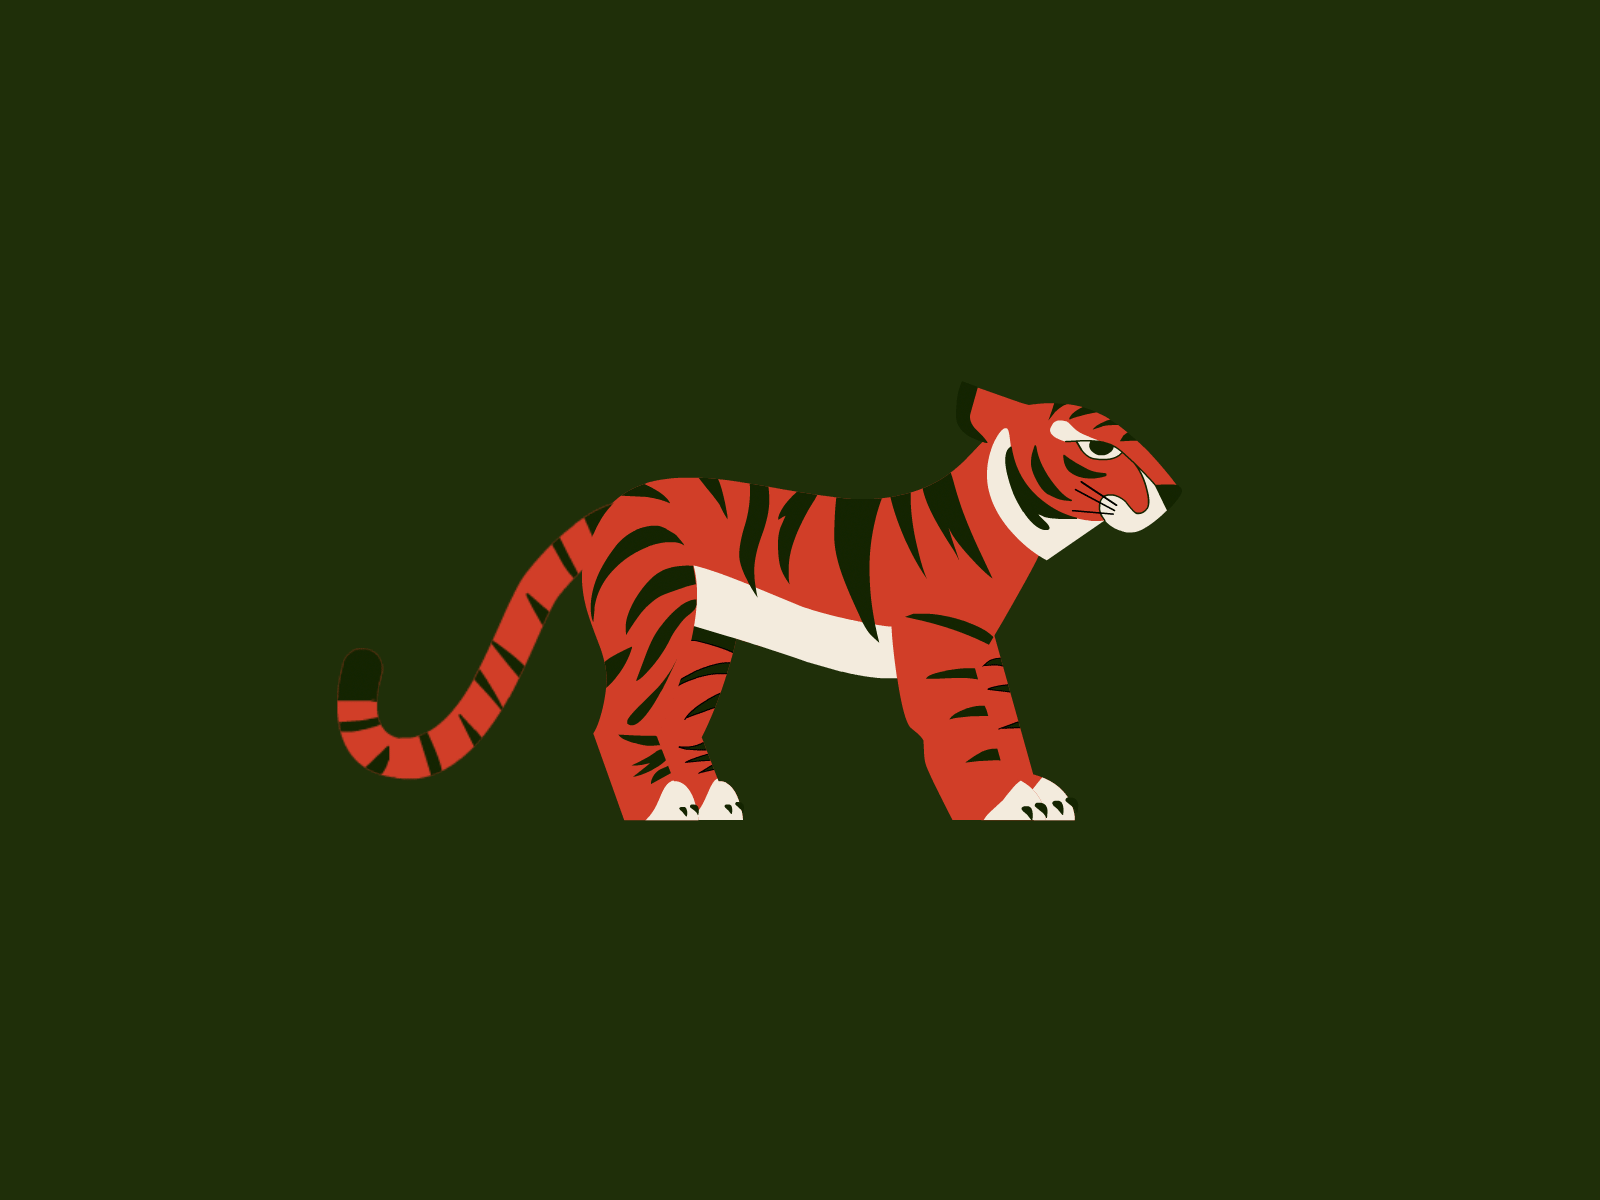 Fable & Mane - Tiger 2d after effects animation design illustration illustrator logo motion graphics vector